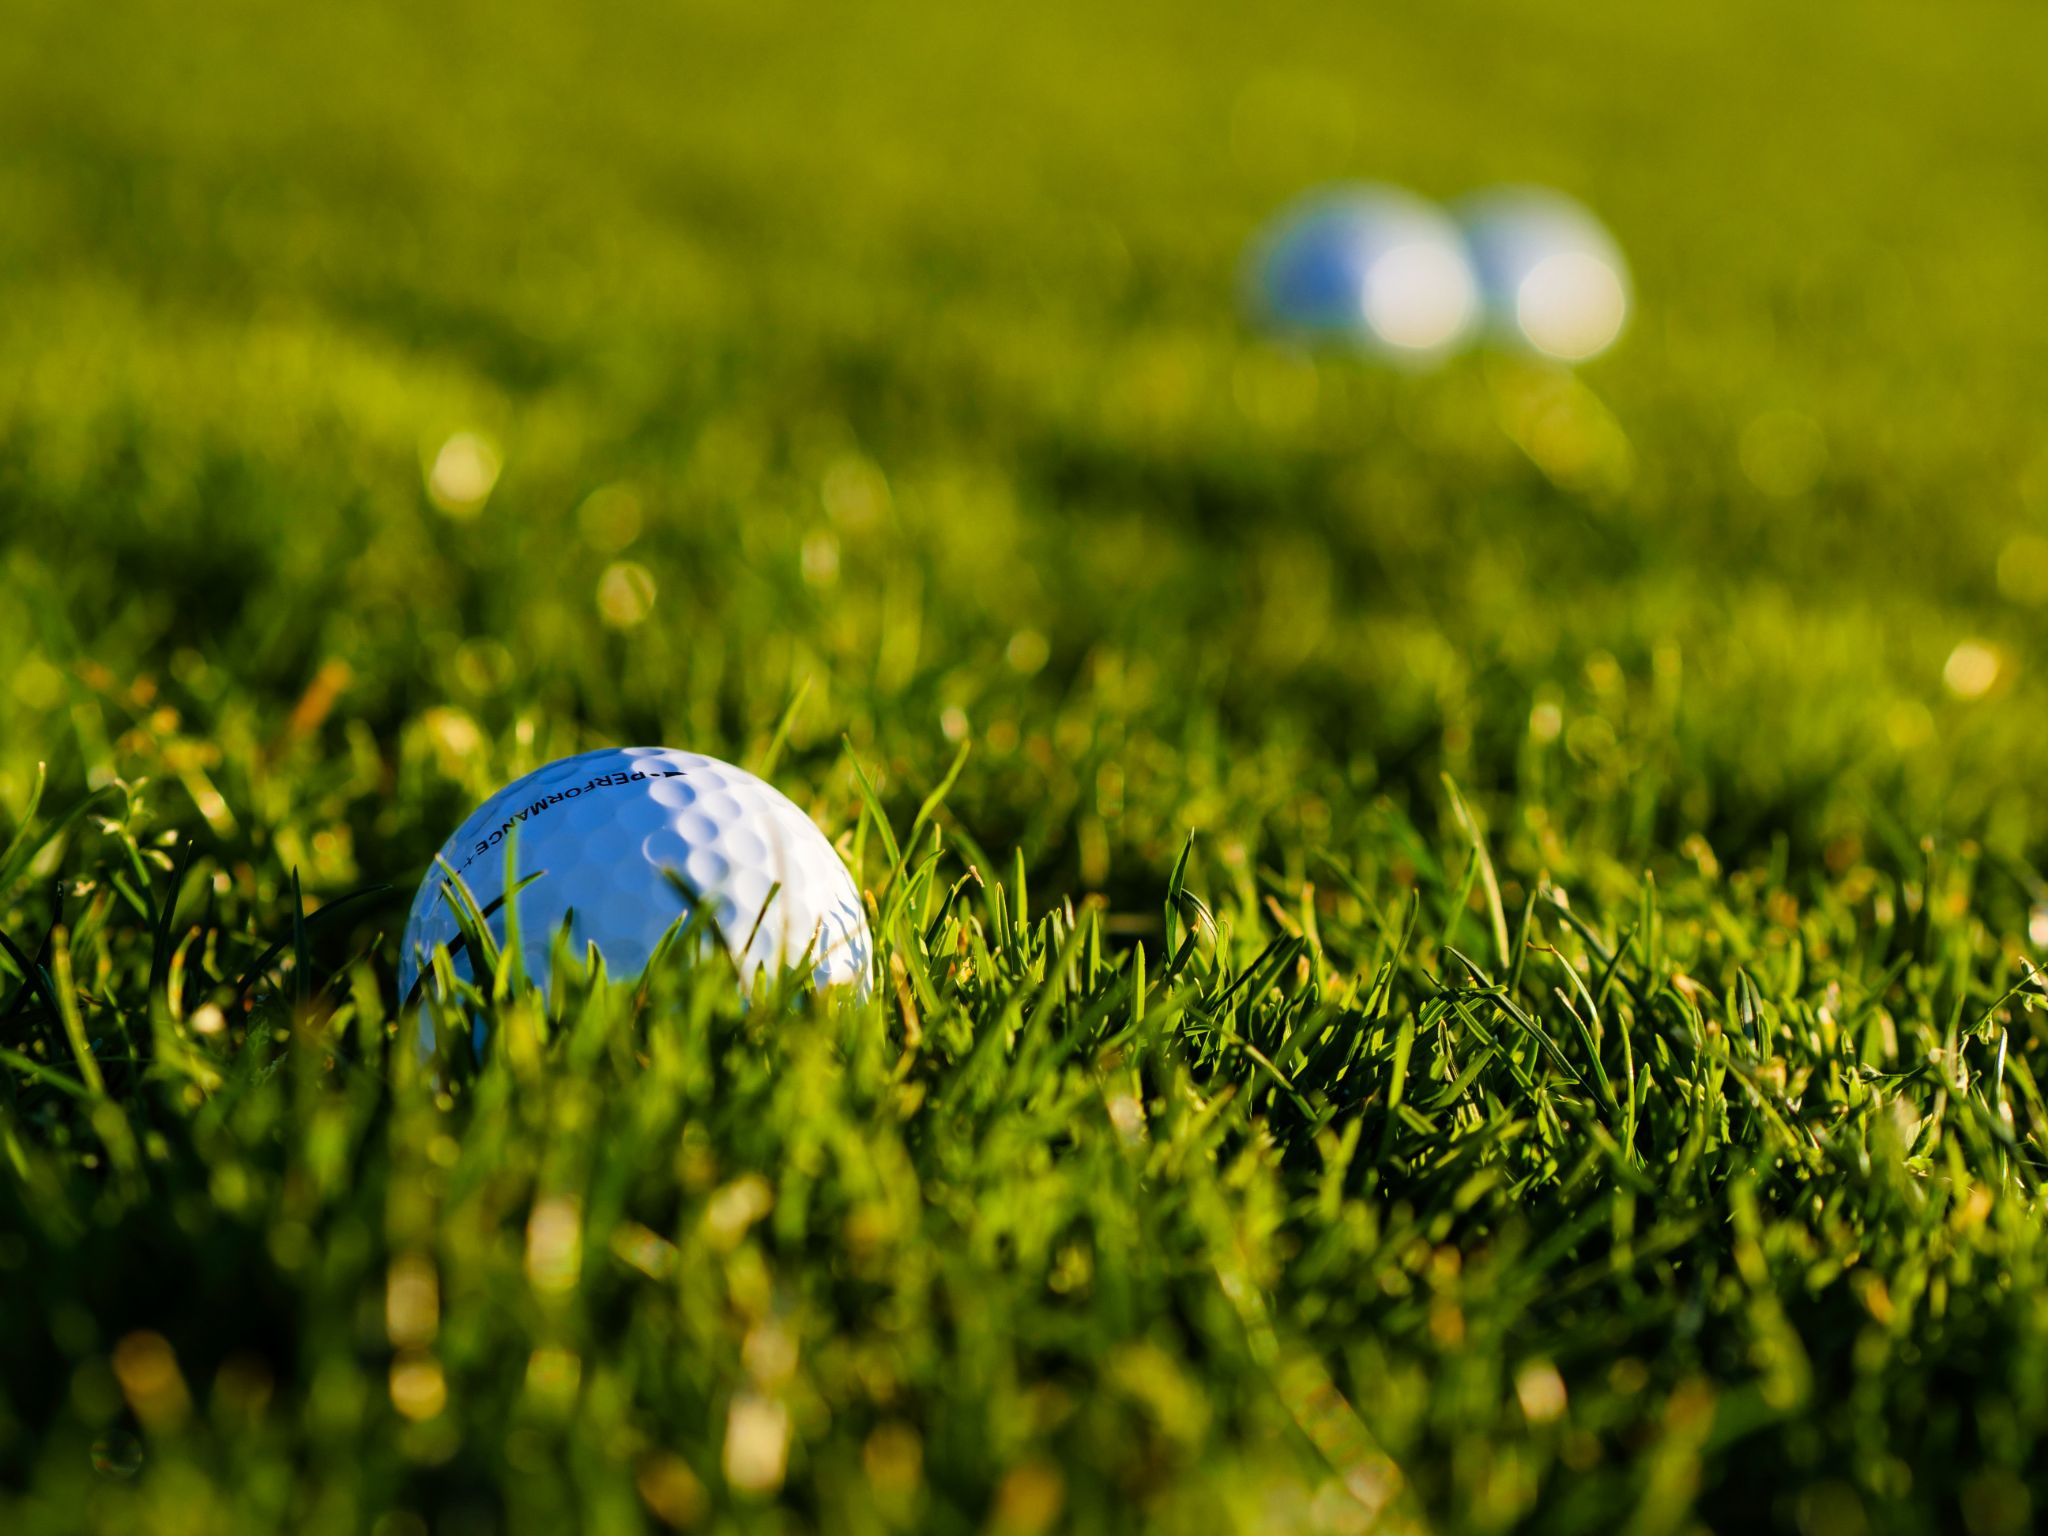 Golf balls on the golf course grass